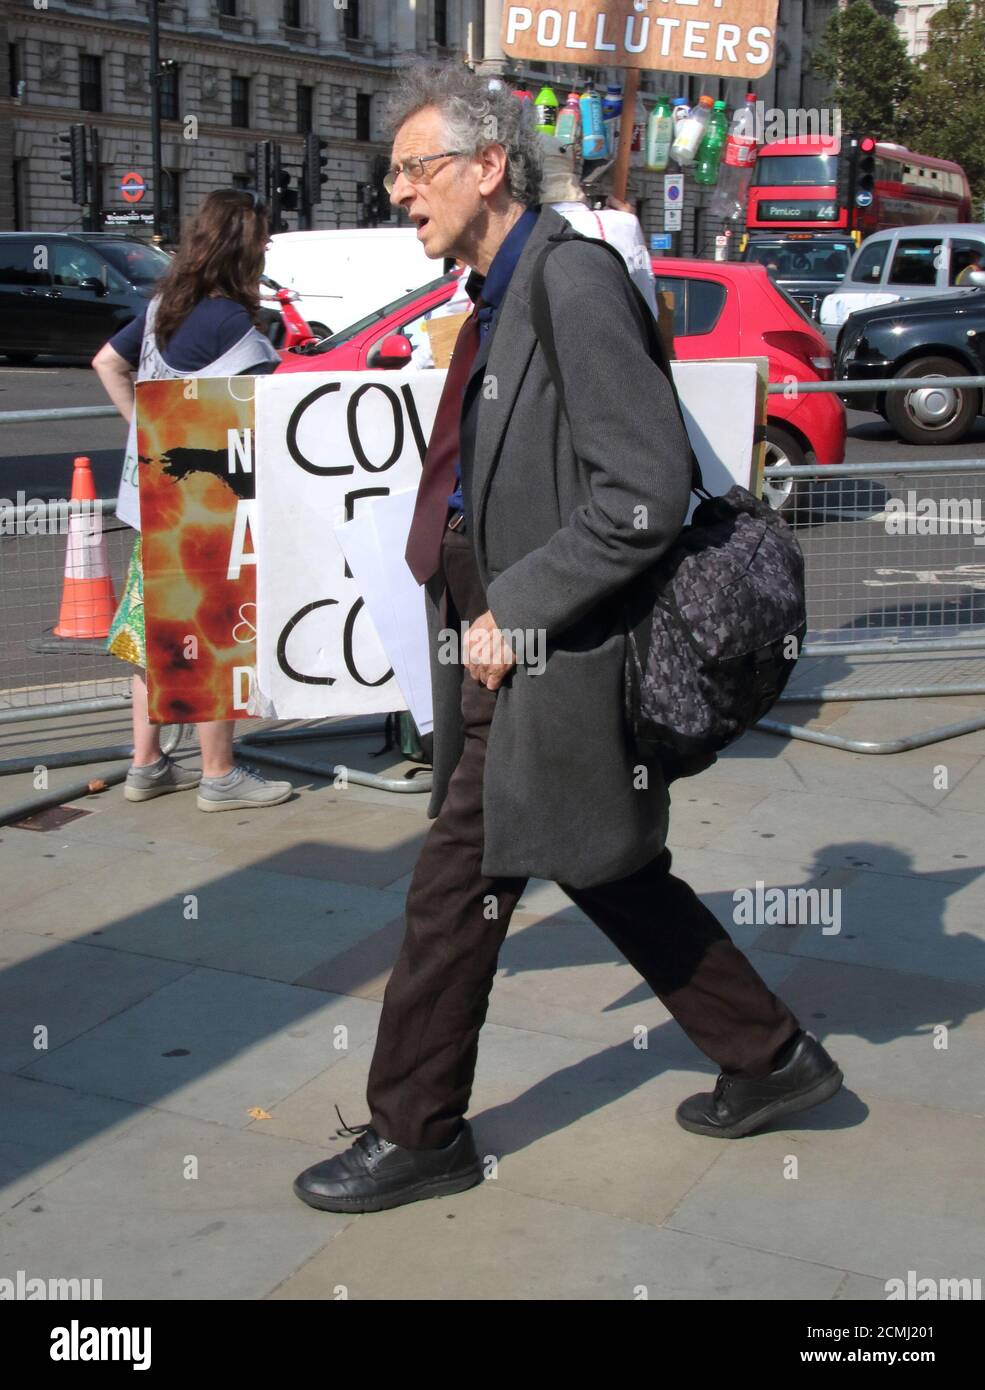 Londra, Regno Unito. 16 Set 2020. Piers Corbyn cammina verso Whitehall tenendo i cartelli sotto il suo braccio.Outspeaked attivista Piers Corbyn - fratello dell'ex leader del lavoro Jeremy Bernard Corbyn è stato visto campagna di fronte a Downing Street, parlando ad una folla circa la sua teoria del cospirato Covid-19. Arrivò a Westminster con diversi cartelli della campagna, dopo di che incontrò altri attivisti a Whitehall. L'astrofisico si è rivolto alle folle durante il blocco che ha accluso l'epidemia di Covid-19 è stato progettato per controllare la popolazione. Credit: SOPA Images Limited/Alamy Live News Foto Stock